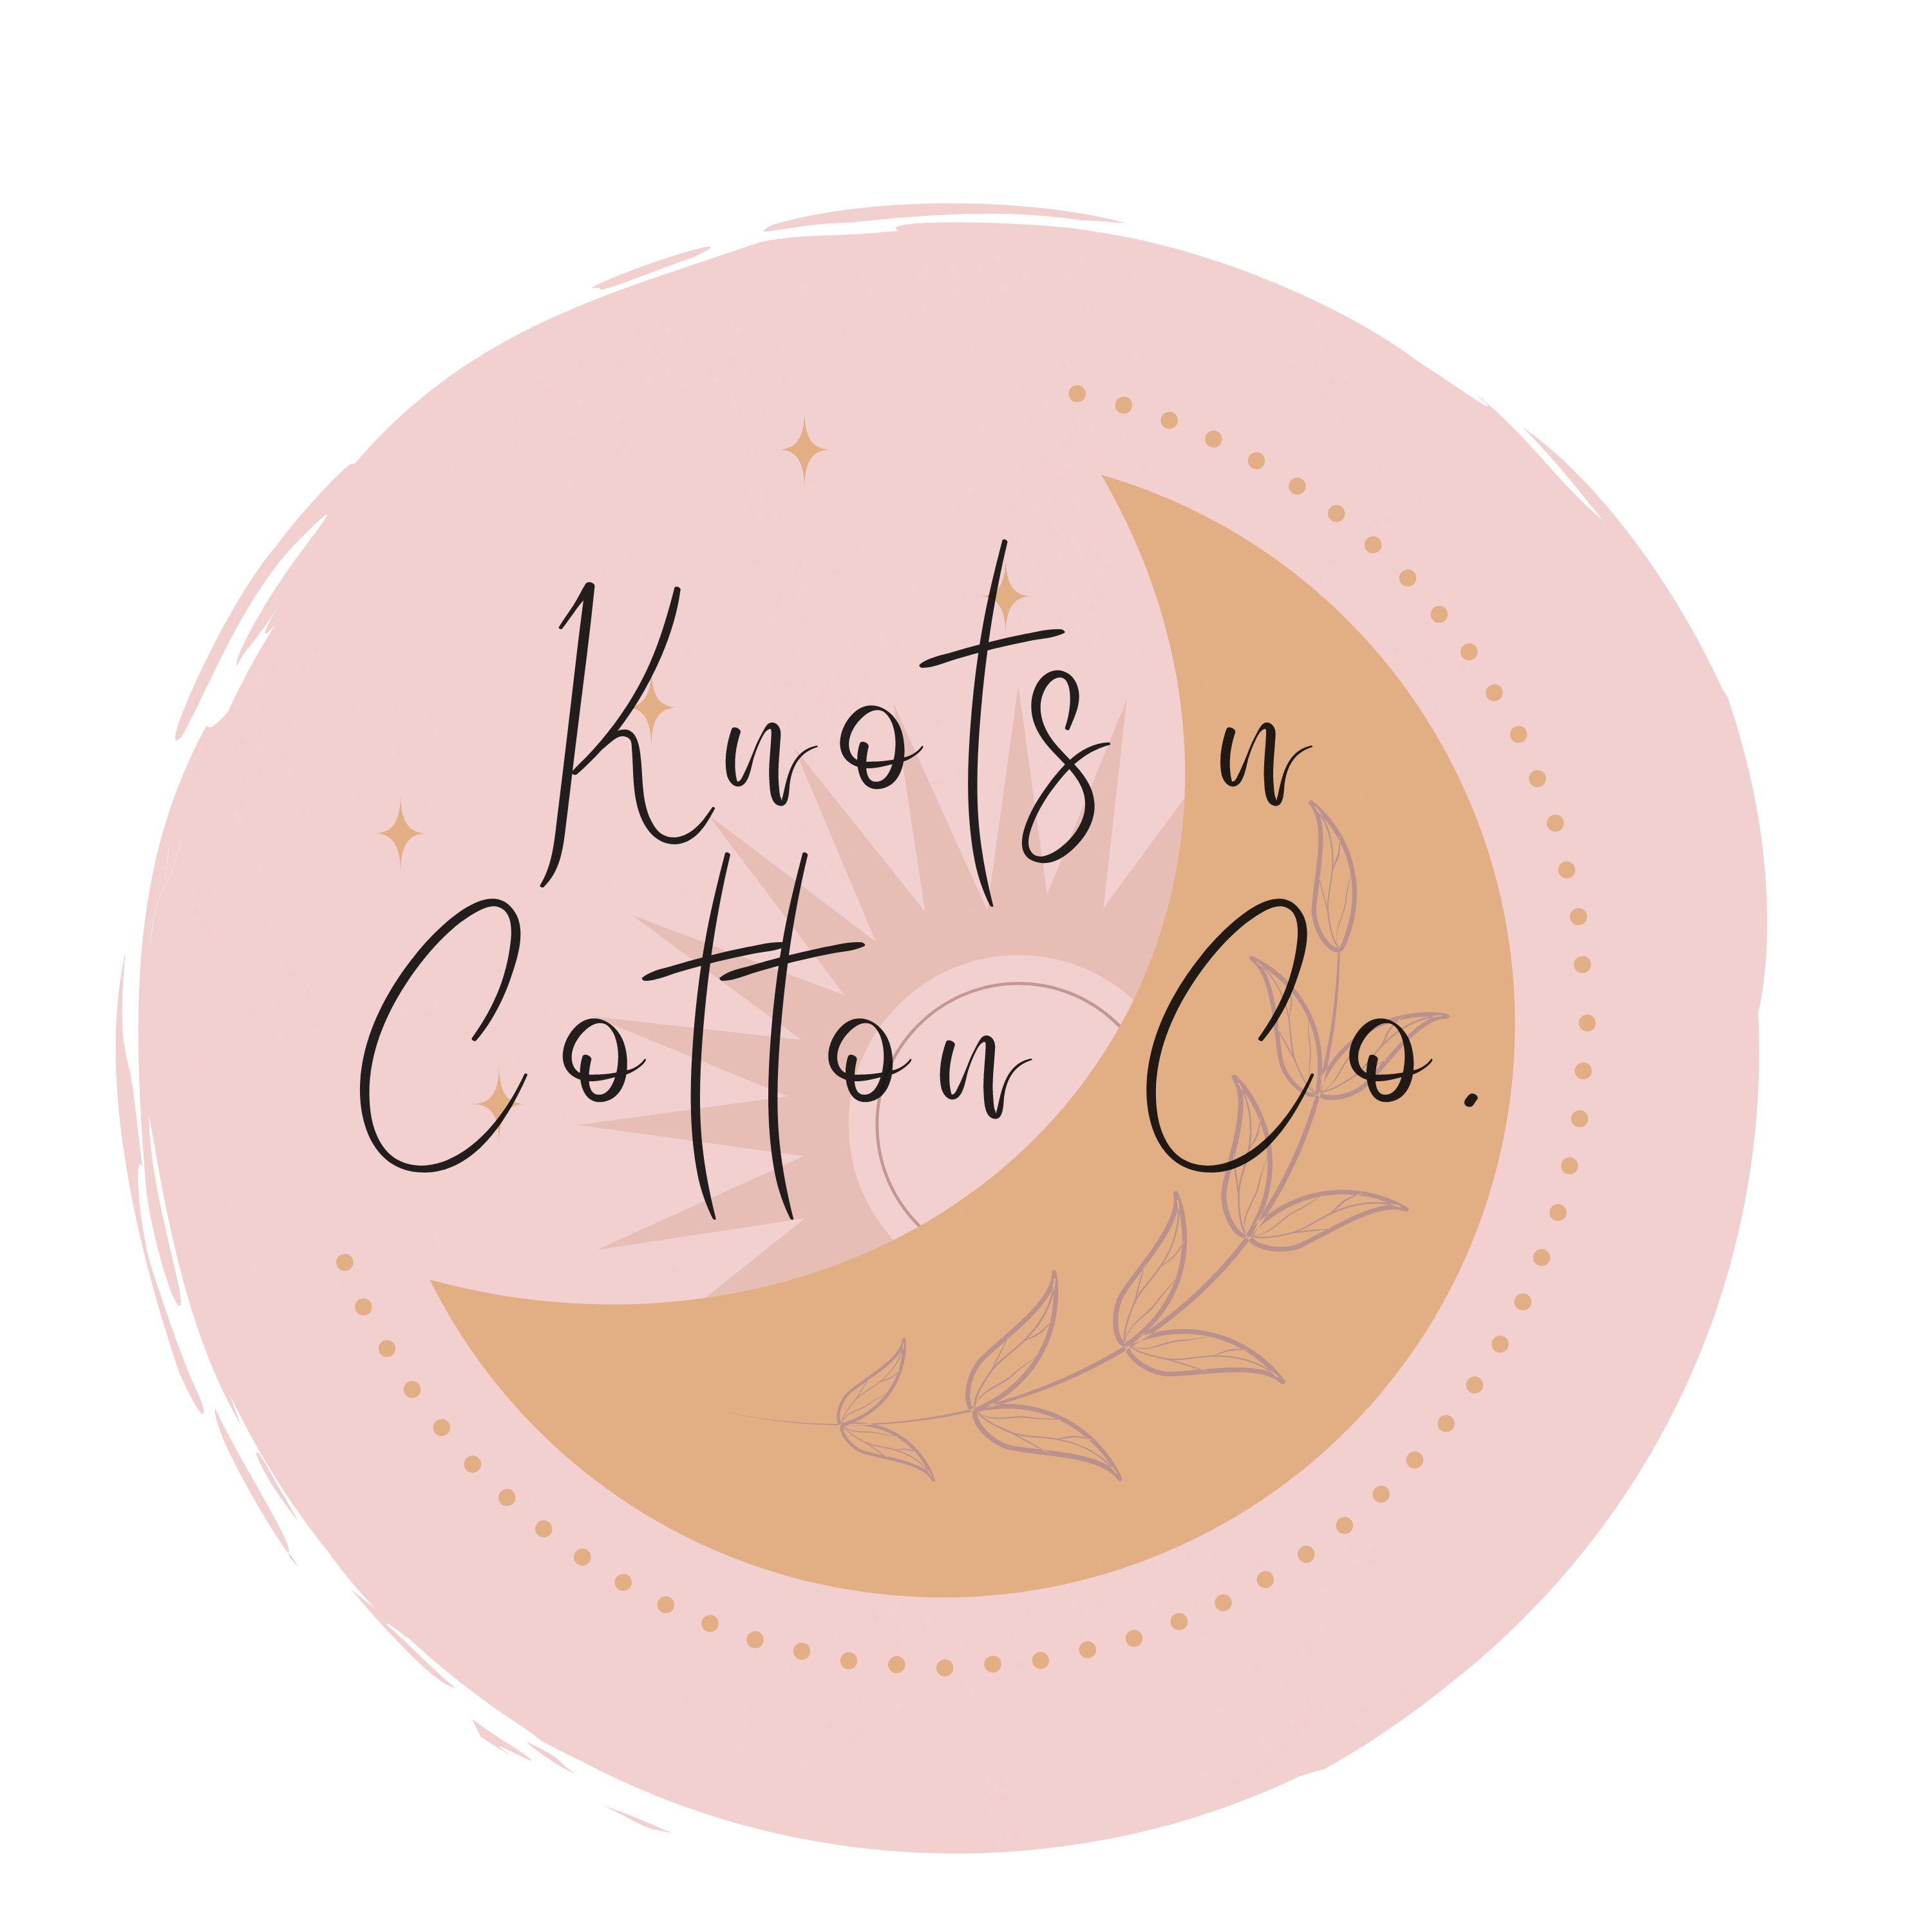 Knots n Cotton Co